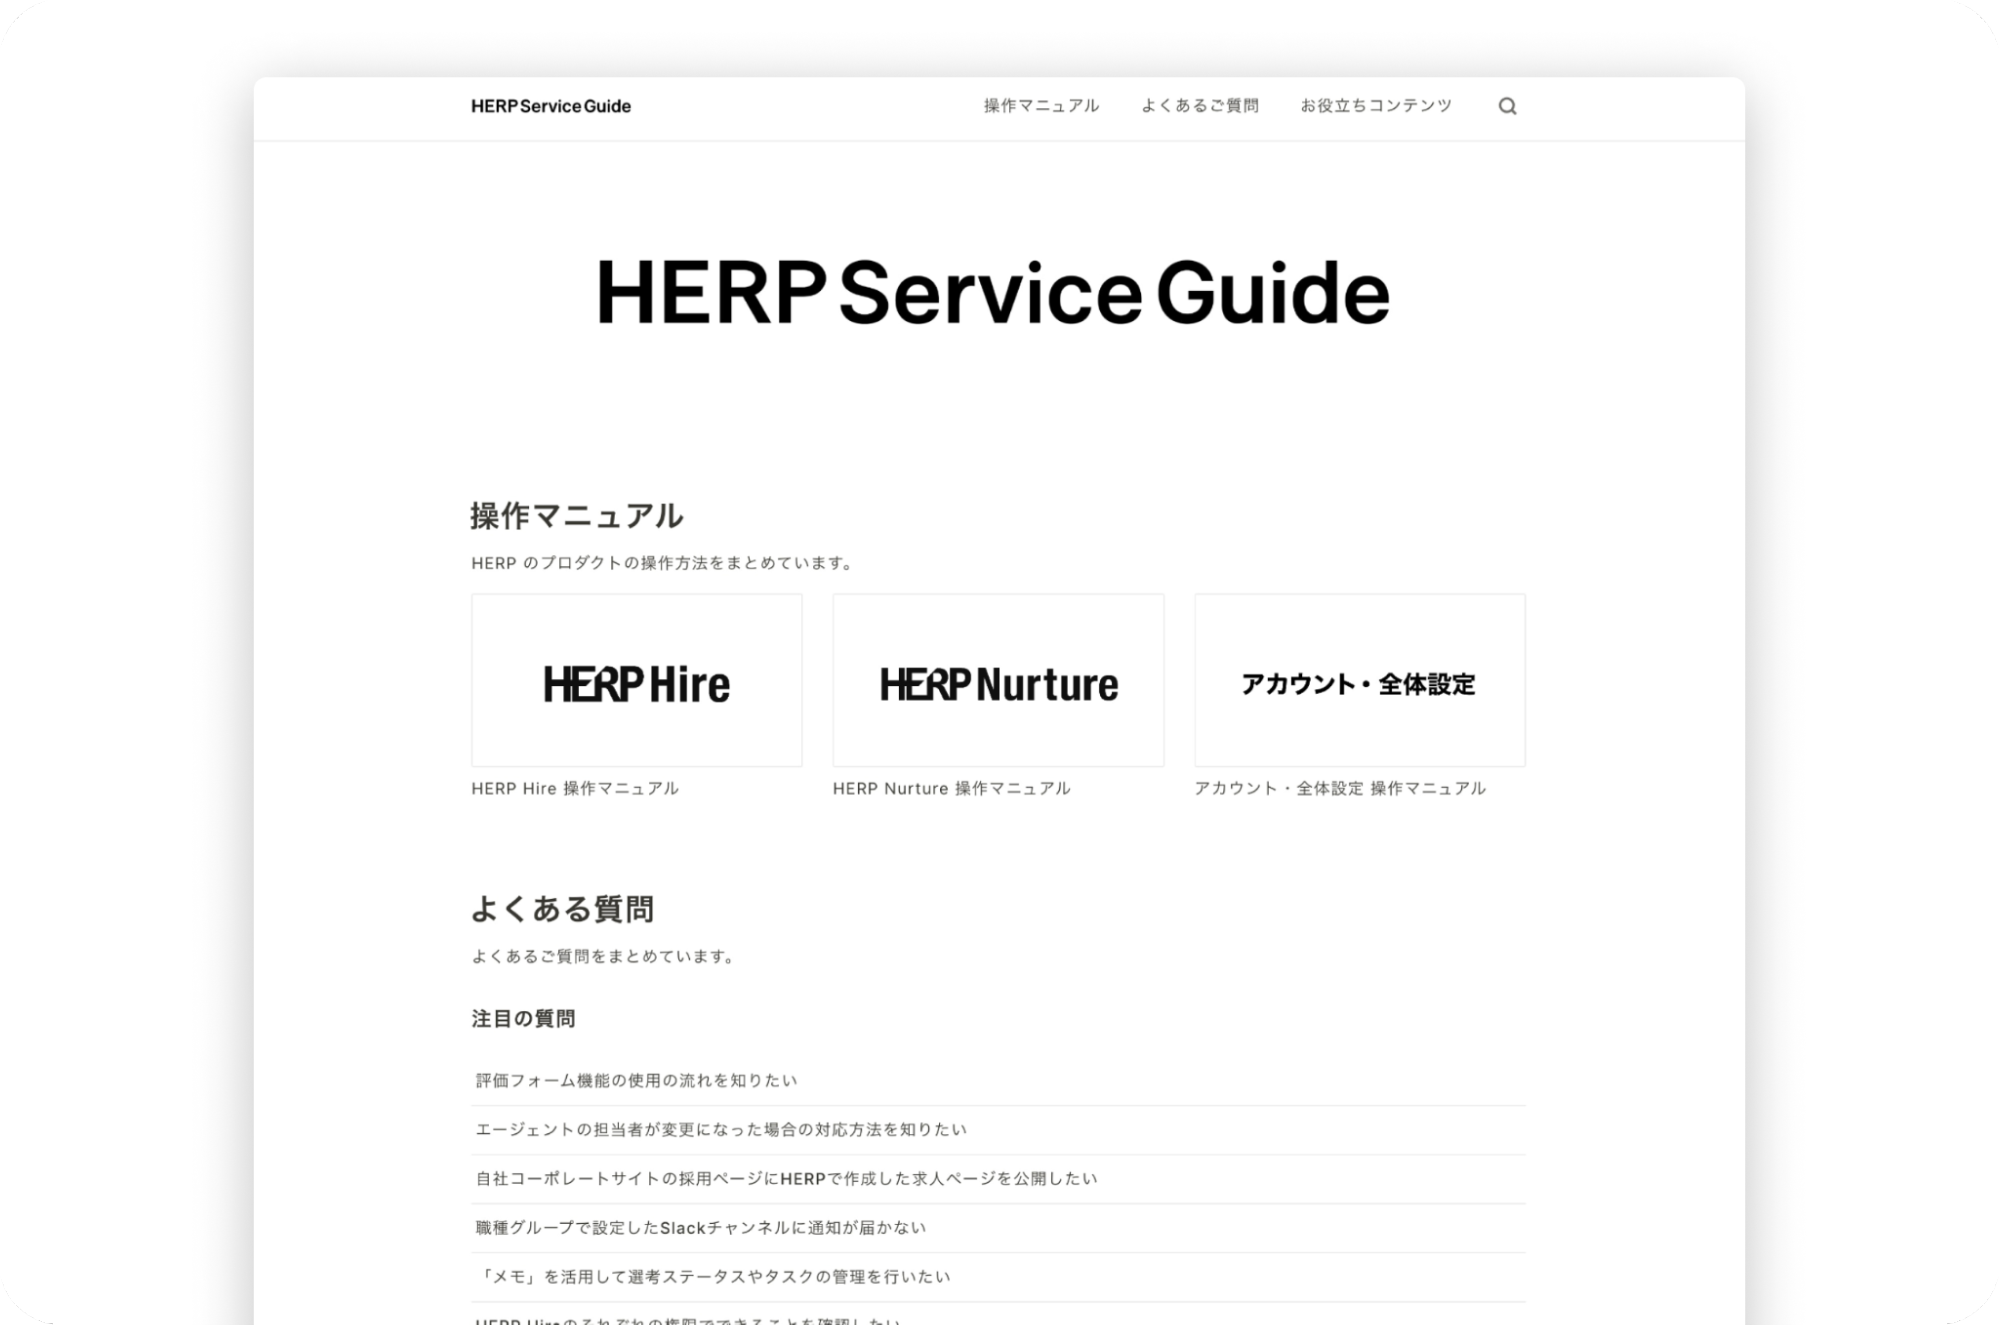 リニューアル後のHERP Service Guide。3つのプロダクトごとの操作マニュアルと、よくある質問に分かれている